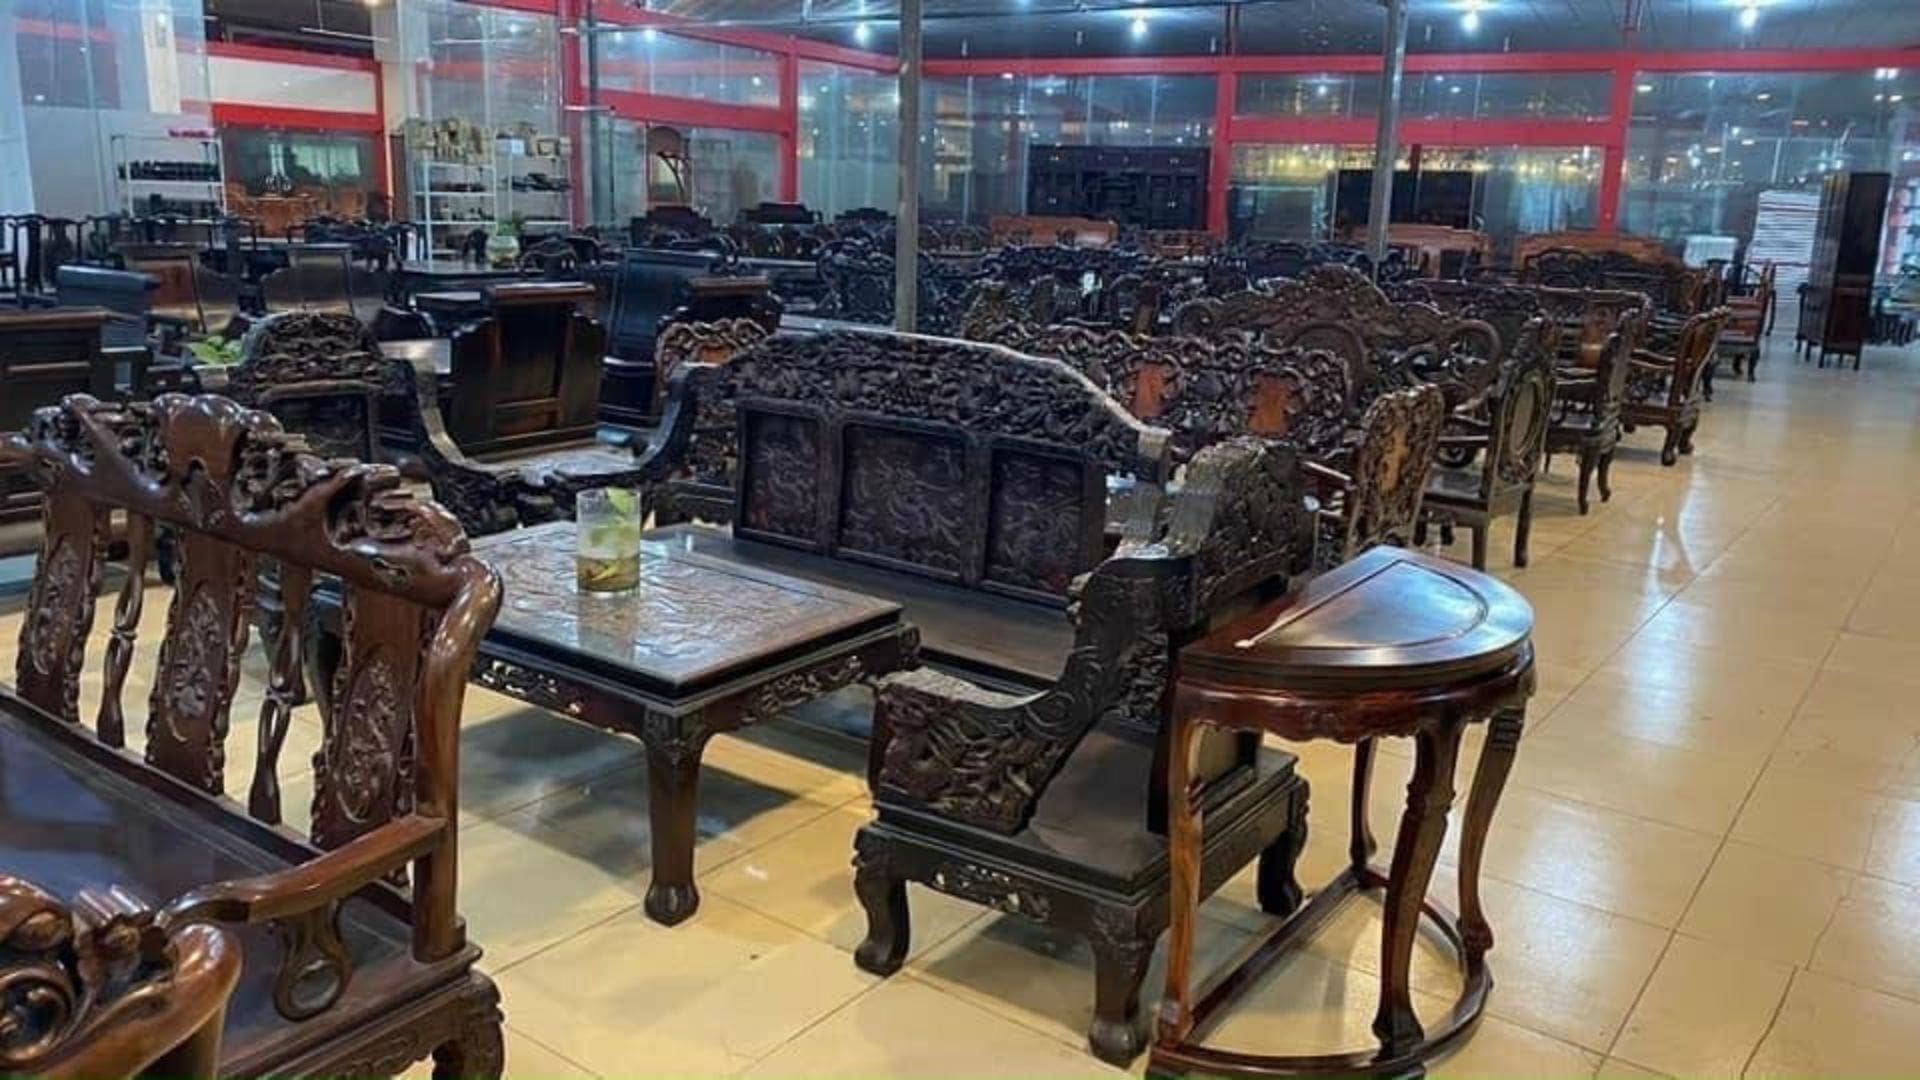 Trung tâm Duyên Định - Thu mua chợ đồ cũ Hà Nội chất lượng nhất 